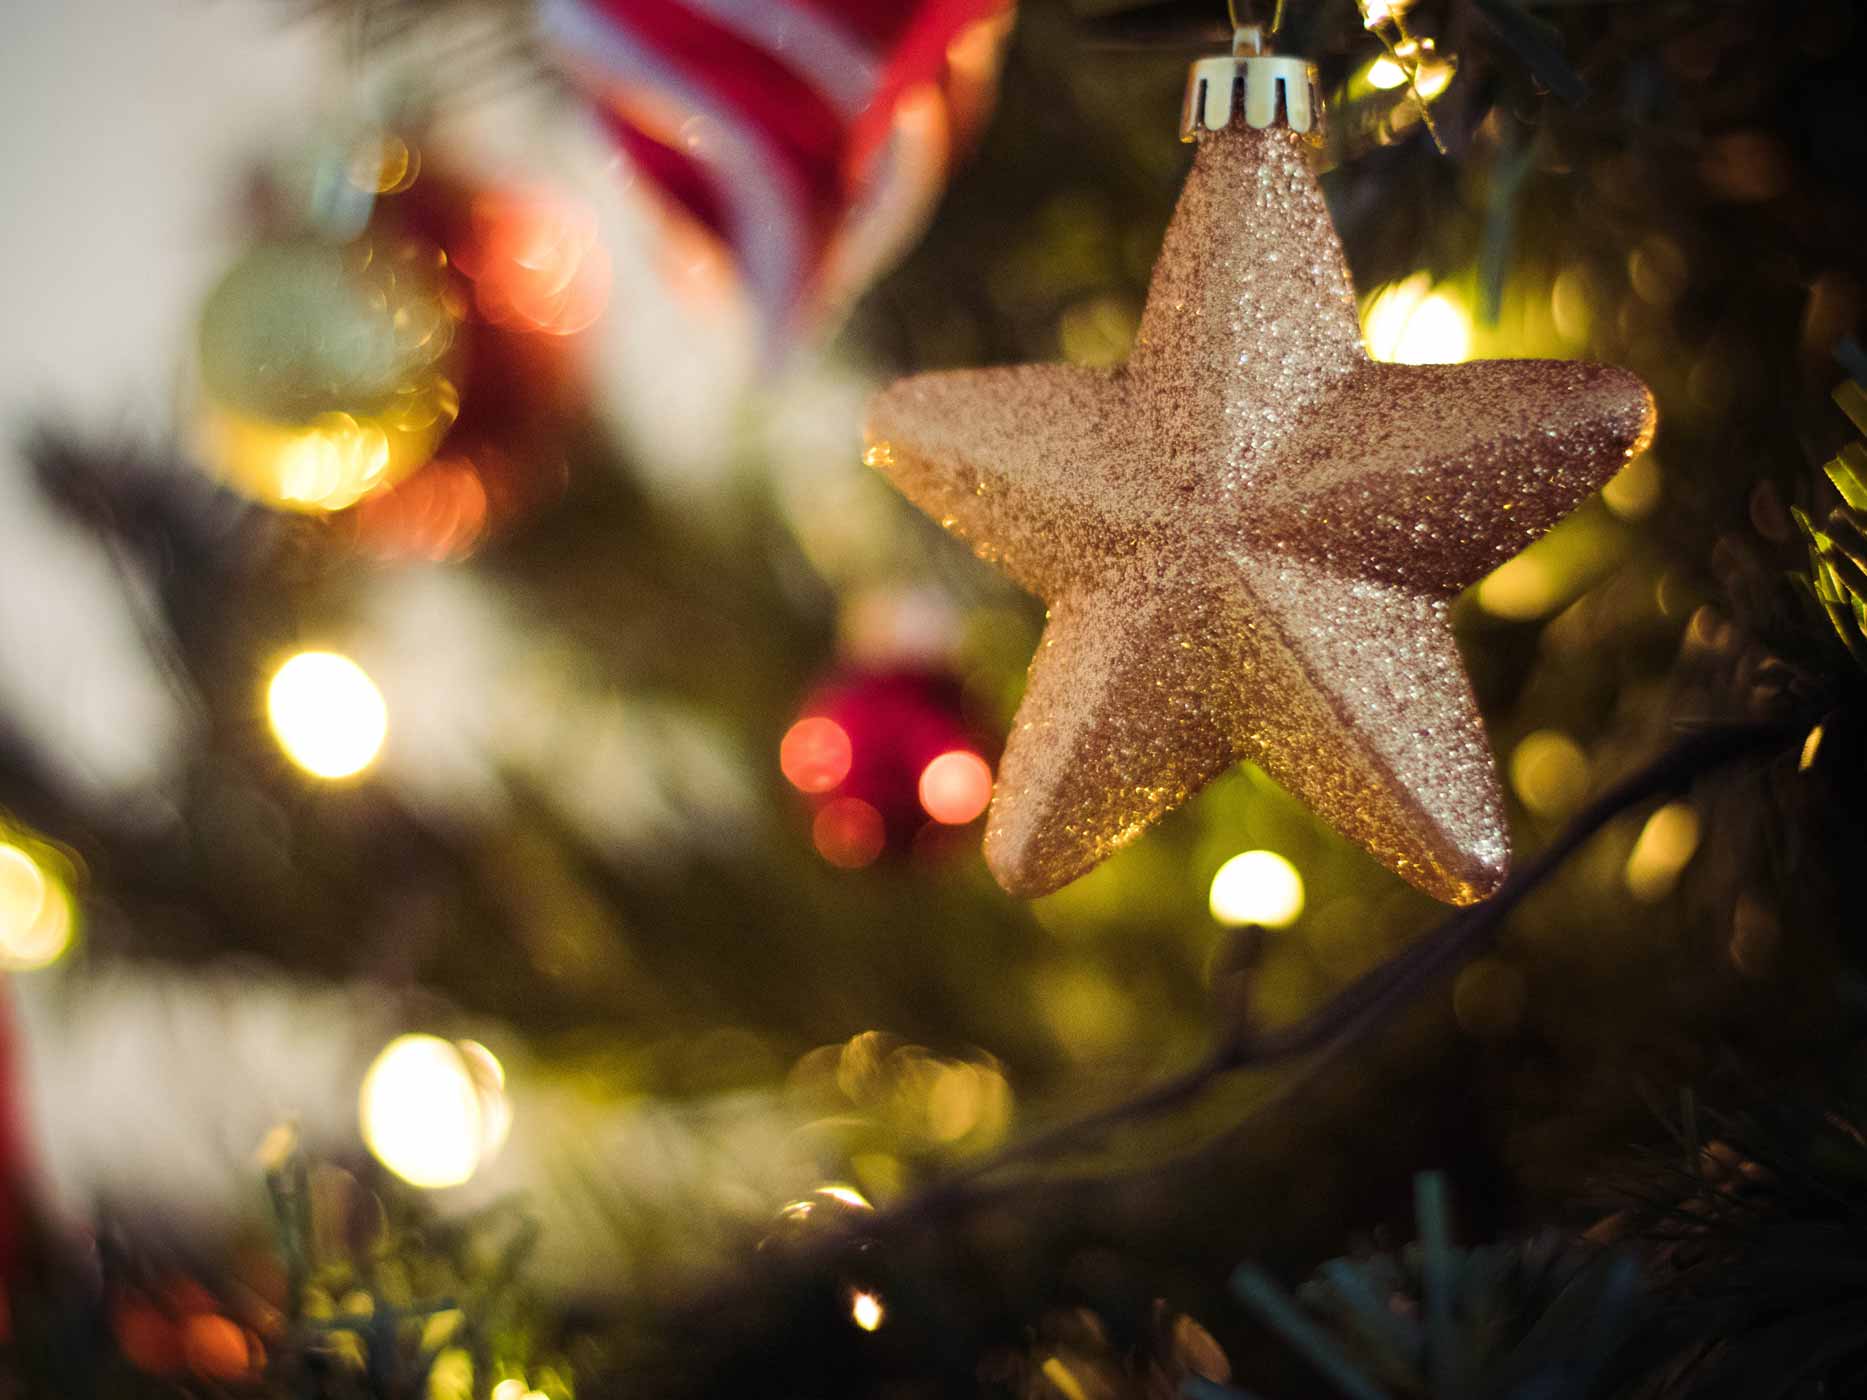 Ein goldener Stern hängt an einem festlich beleuchteten und geschmückten Weihnachtsbaum